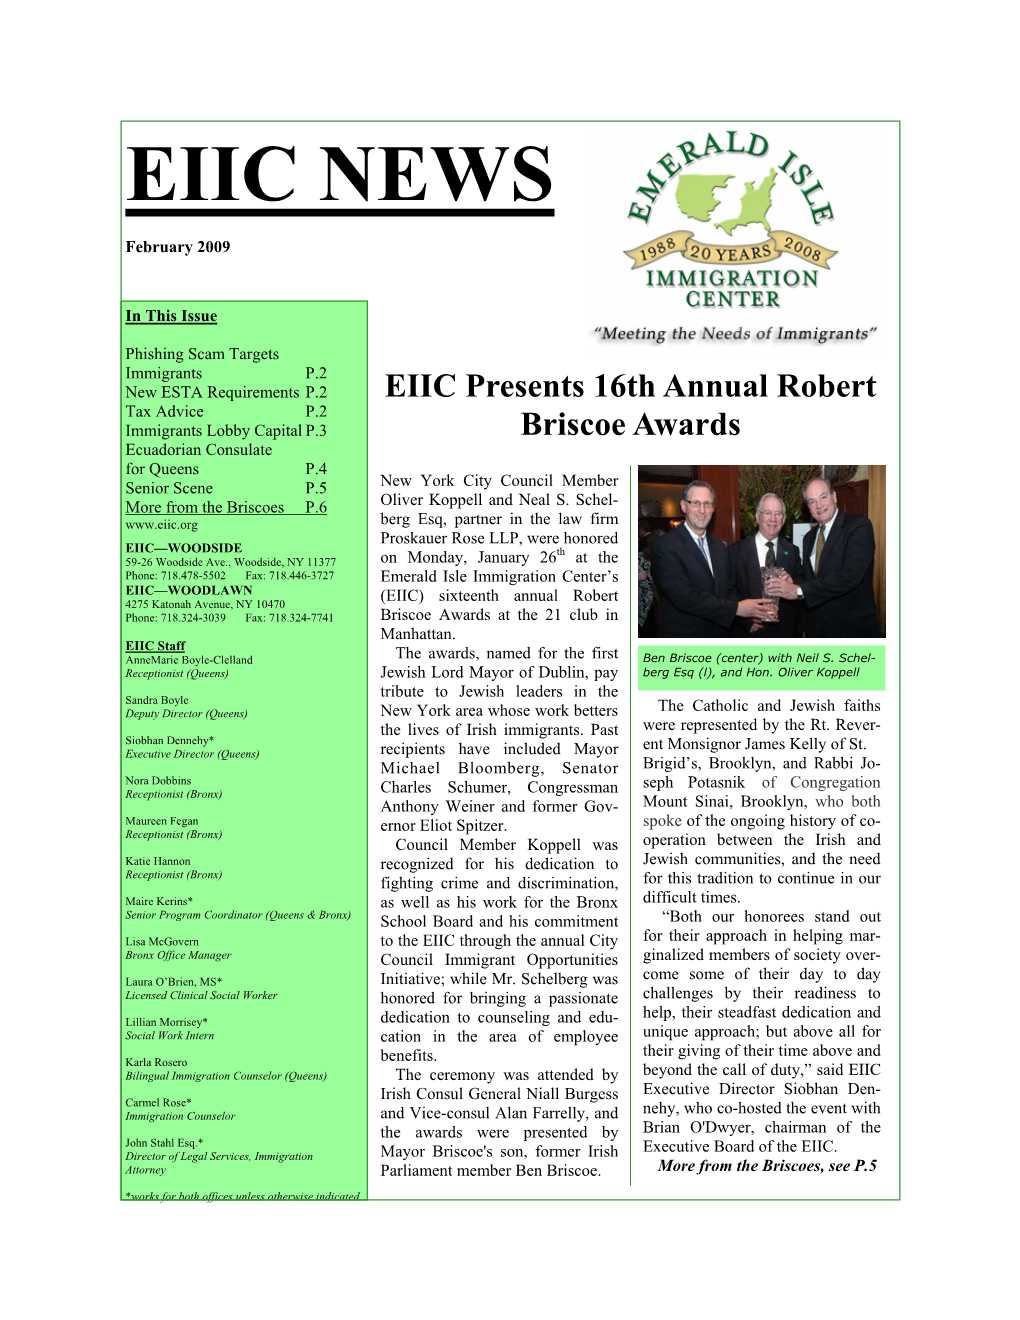 EIIC February 2009 Newsletter (Pdf)